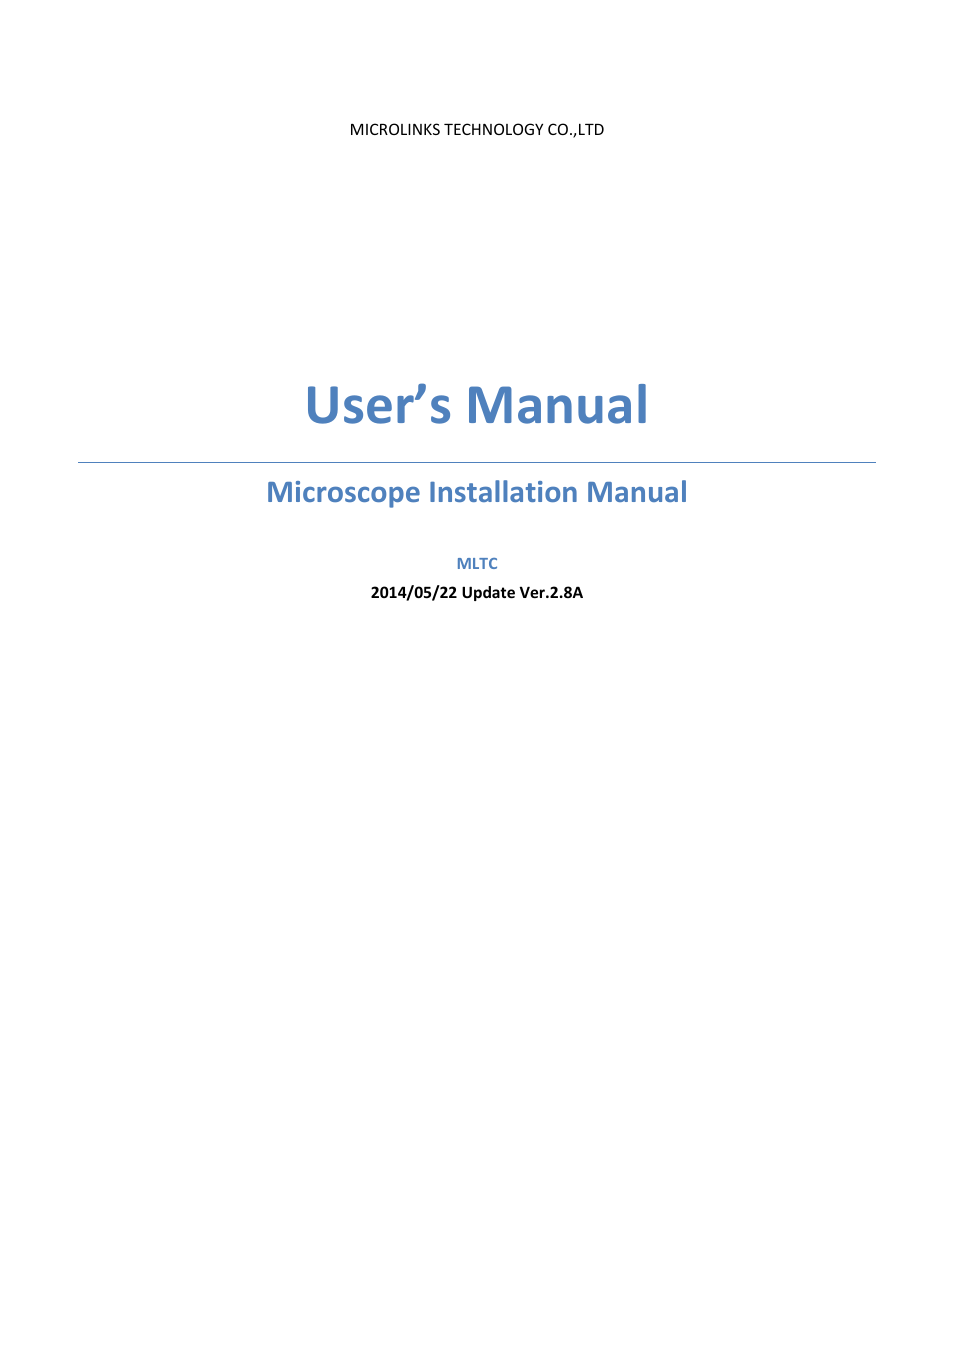 UM12 - install manual